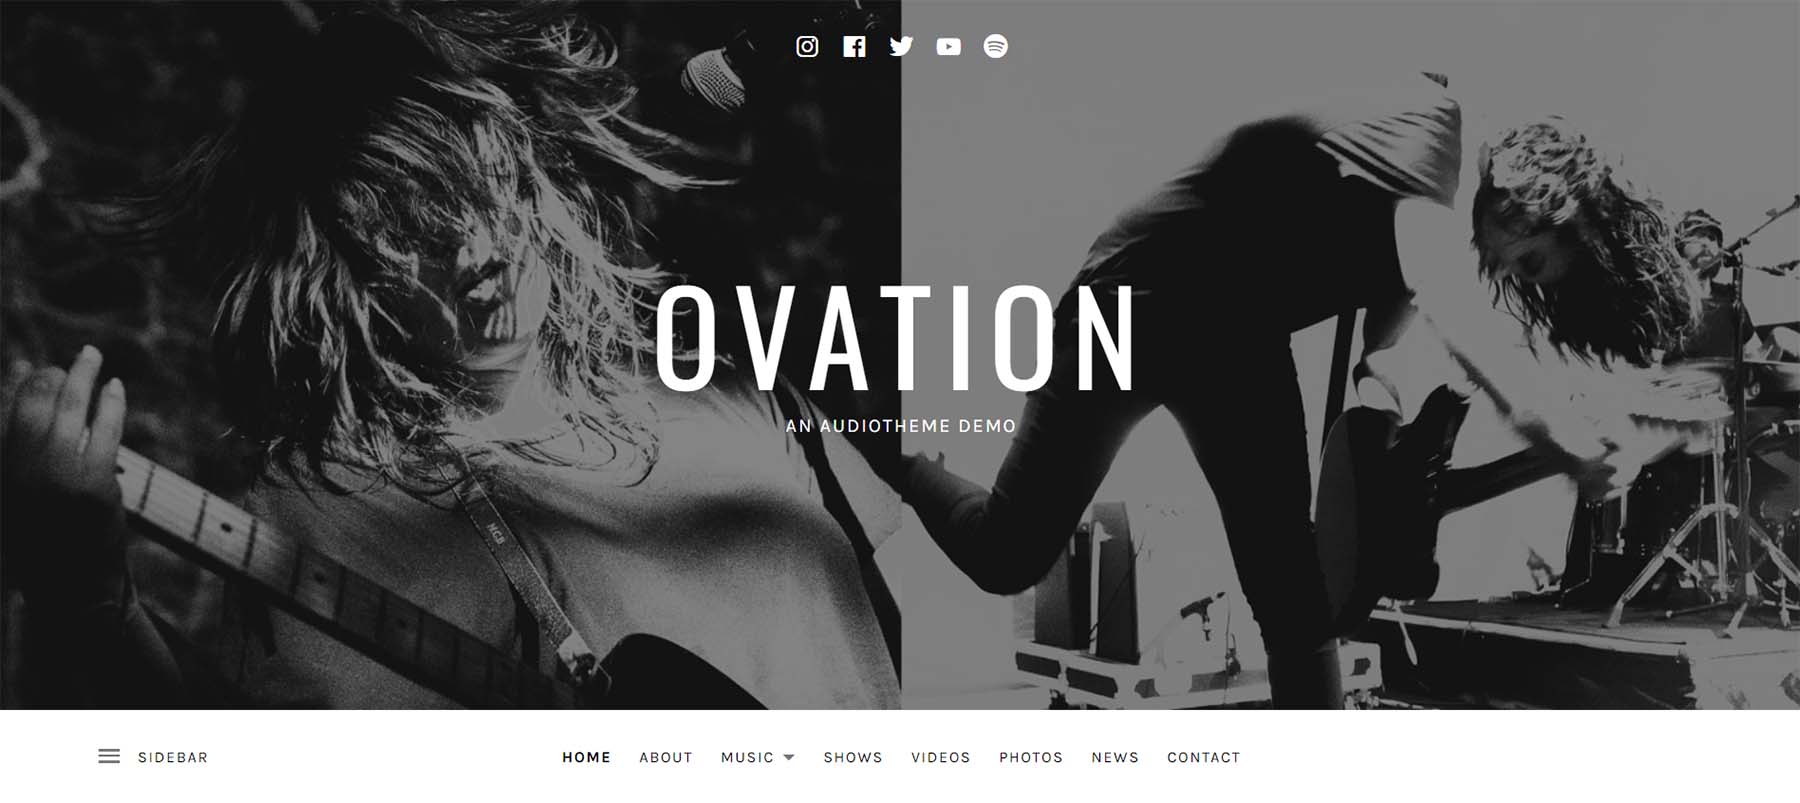 Ovation, a podcast WordPress theme